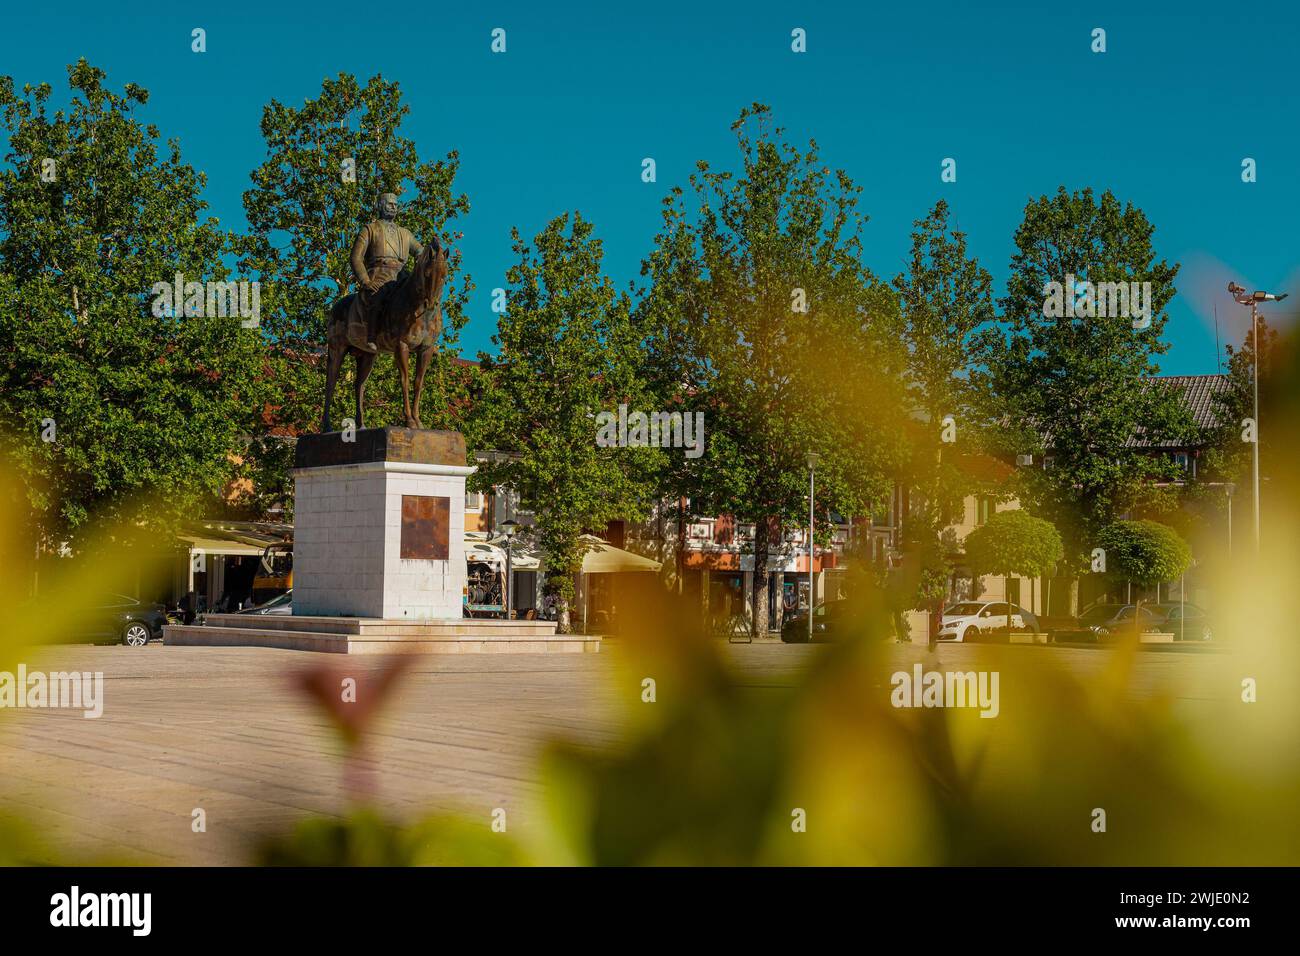 Statue auf dem Trg Slobode oder Freiheitsplatz im Zentrum von Niksic, Montenegro an einem sonnigen Tag. Flaches Freigelände im Zentrum einer Stadt, umgeben von Stockfoto